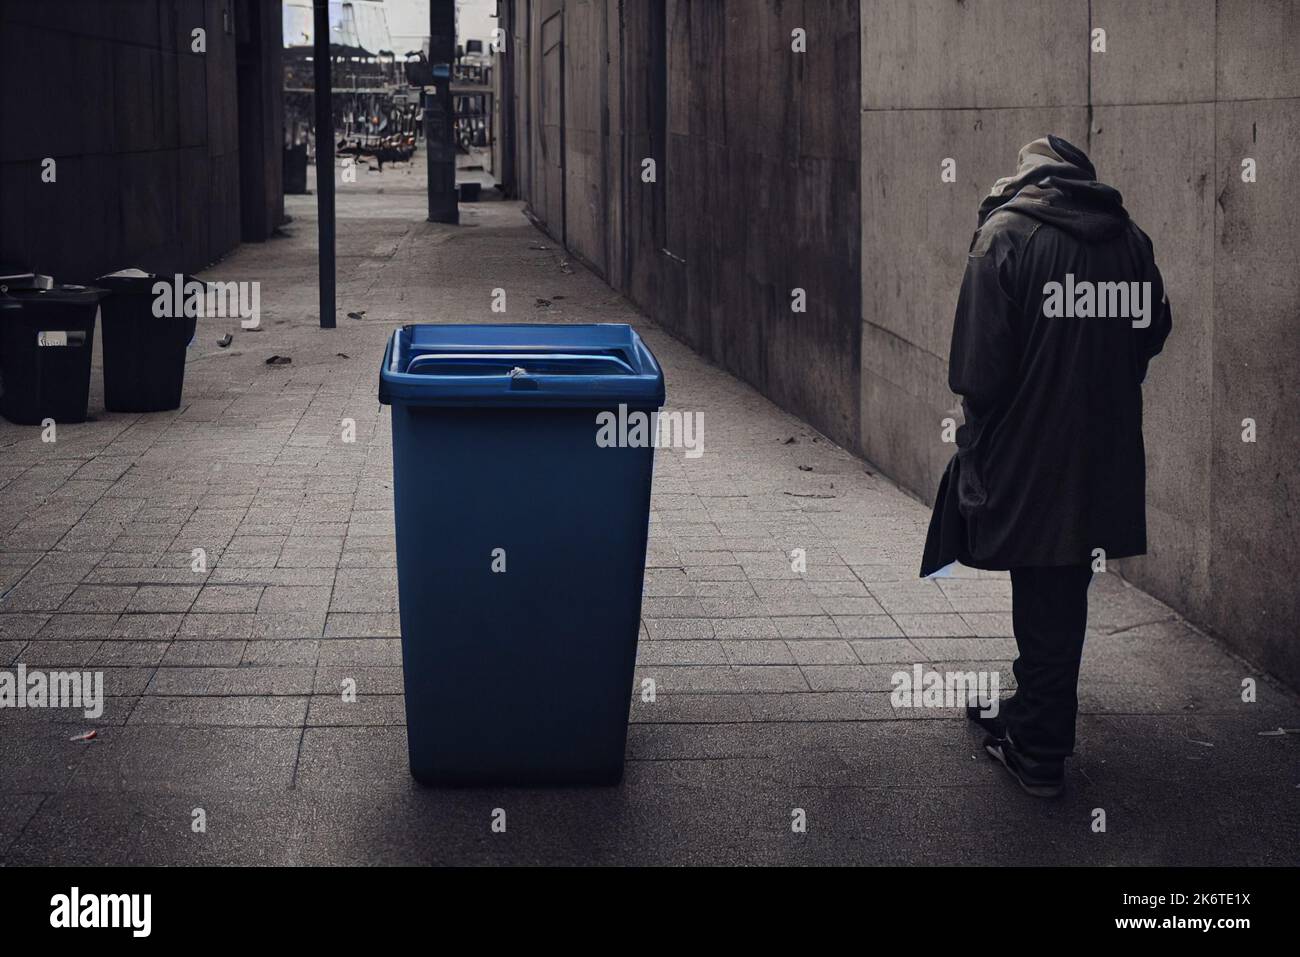 Ein Obdachloser geht neben einen Mülltonnen. Er ist niedergetreten und hoffnungslos, wird vom Leben schlecht behandelt. Abbildung. Stockfoto